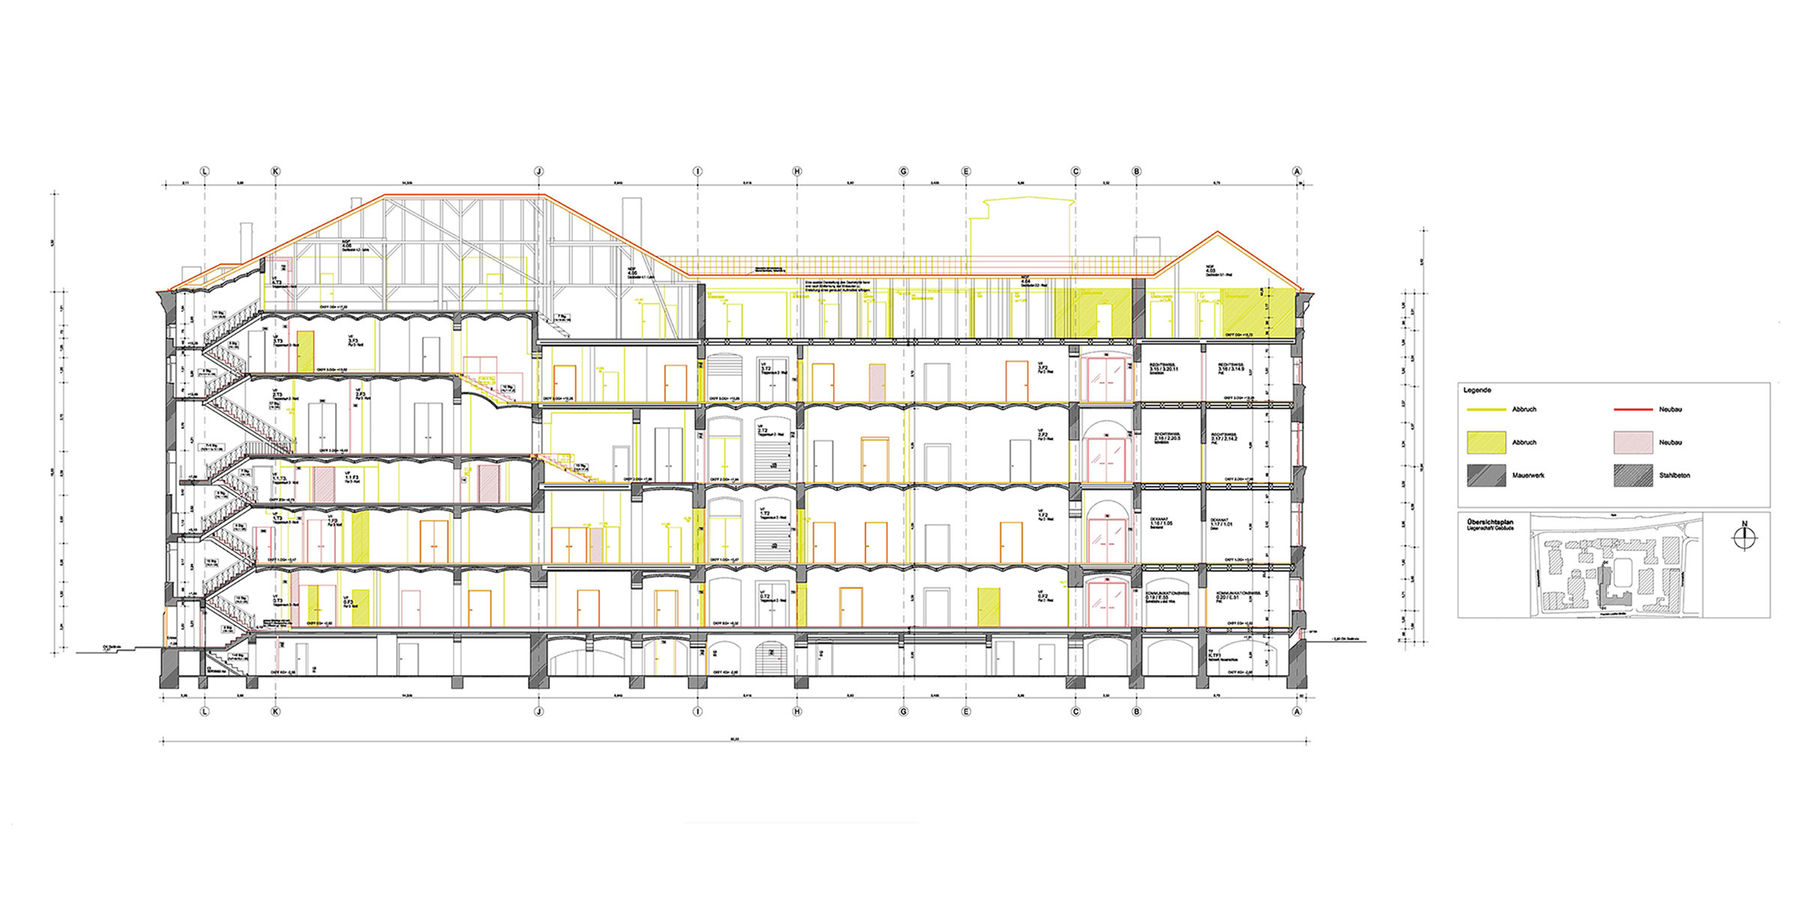 Planung - Gebäudeschnitt mit Kennzeichnung Abbruch und Neubau © 2015 KEBE + SCHOBERTH Dipl.-Ing. Arch. TU-SIA, Berlin